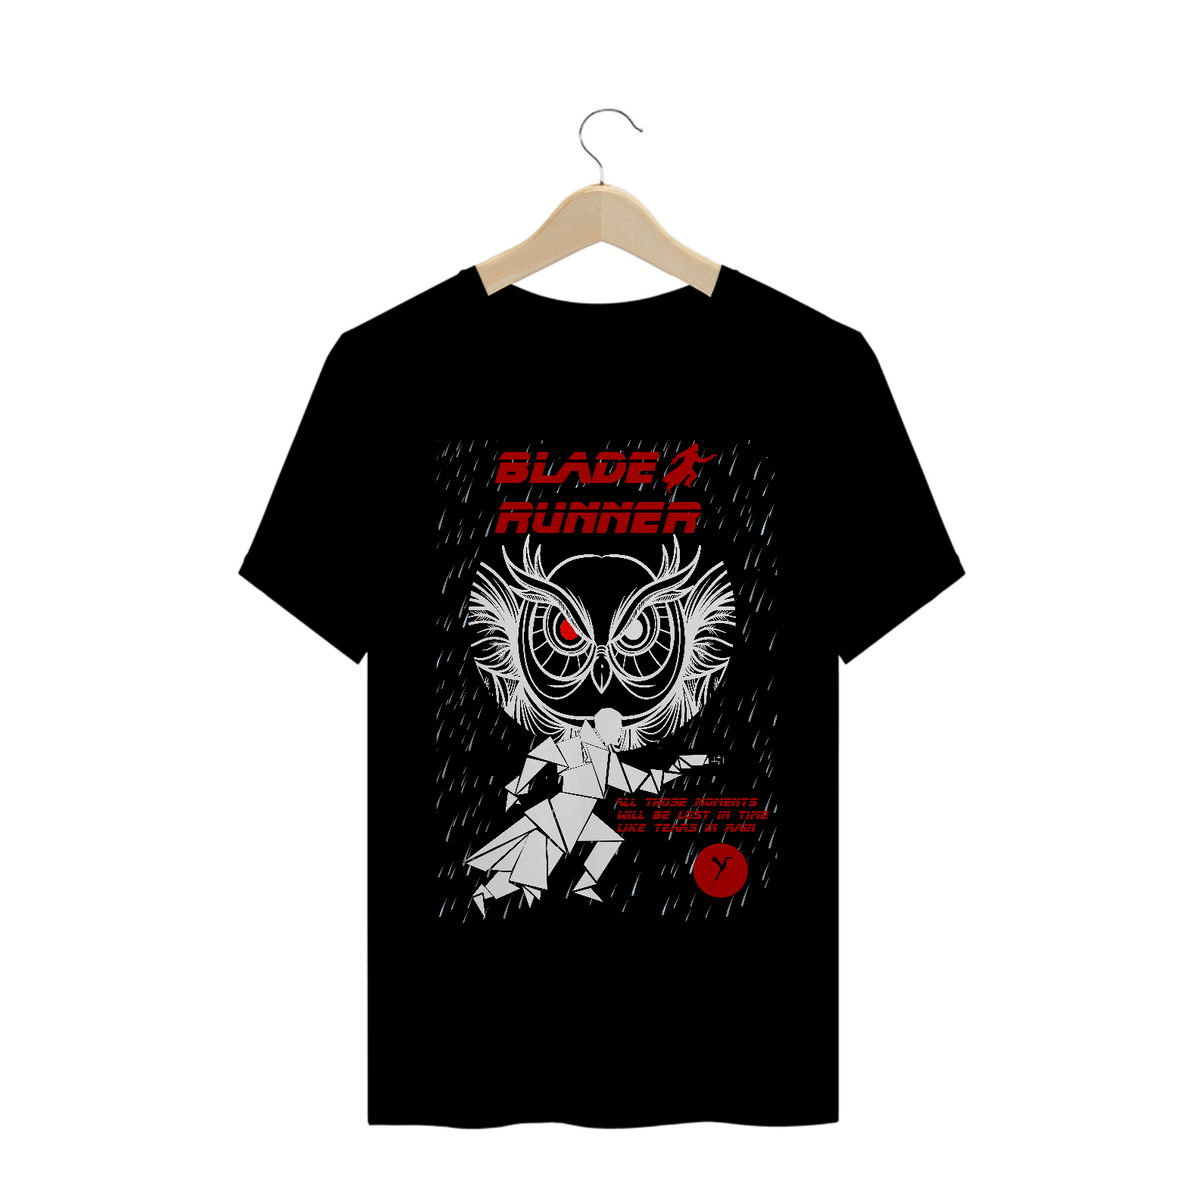 Nome do produto: Camiseta Blade Runner